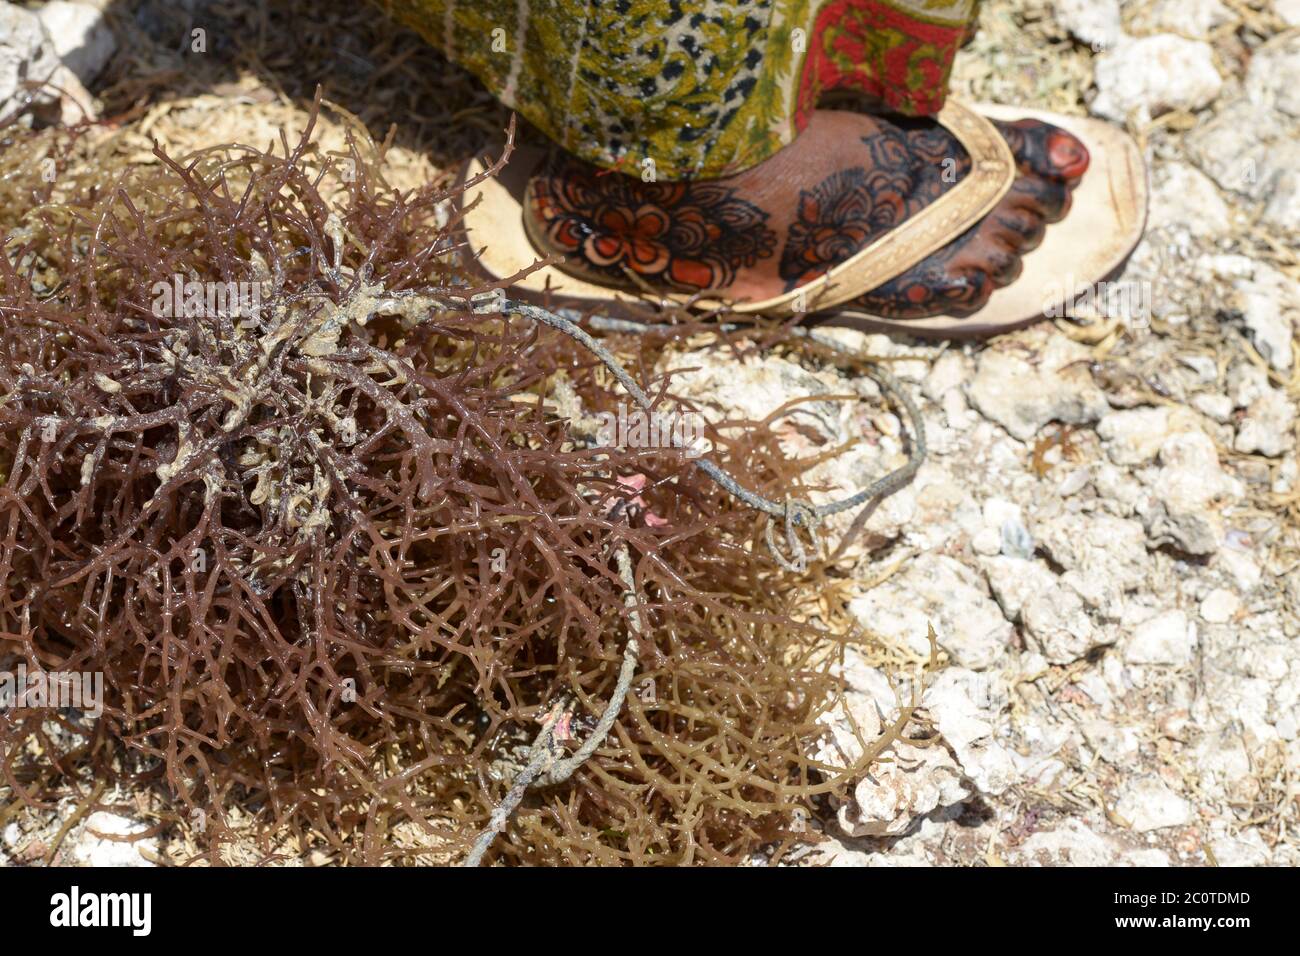 TANZANIE, Zanzibar, en raison du changement climatique et de la hausse des températures de l'eau les agriculteurs d'algues ont changé pour planter des algues rouges dans l'agriculture en eau profonde, sécher des algues au soleil, femme pied avec la peinture de henné Banque D'Images